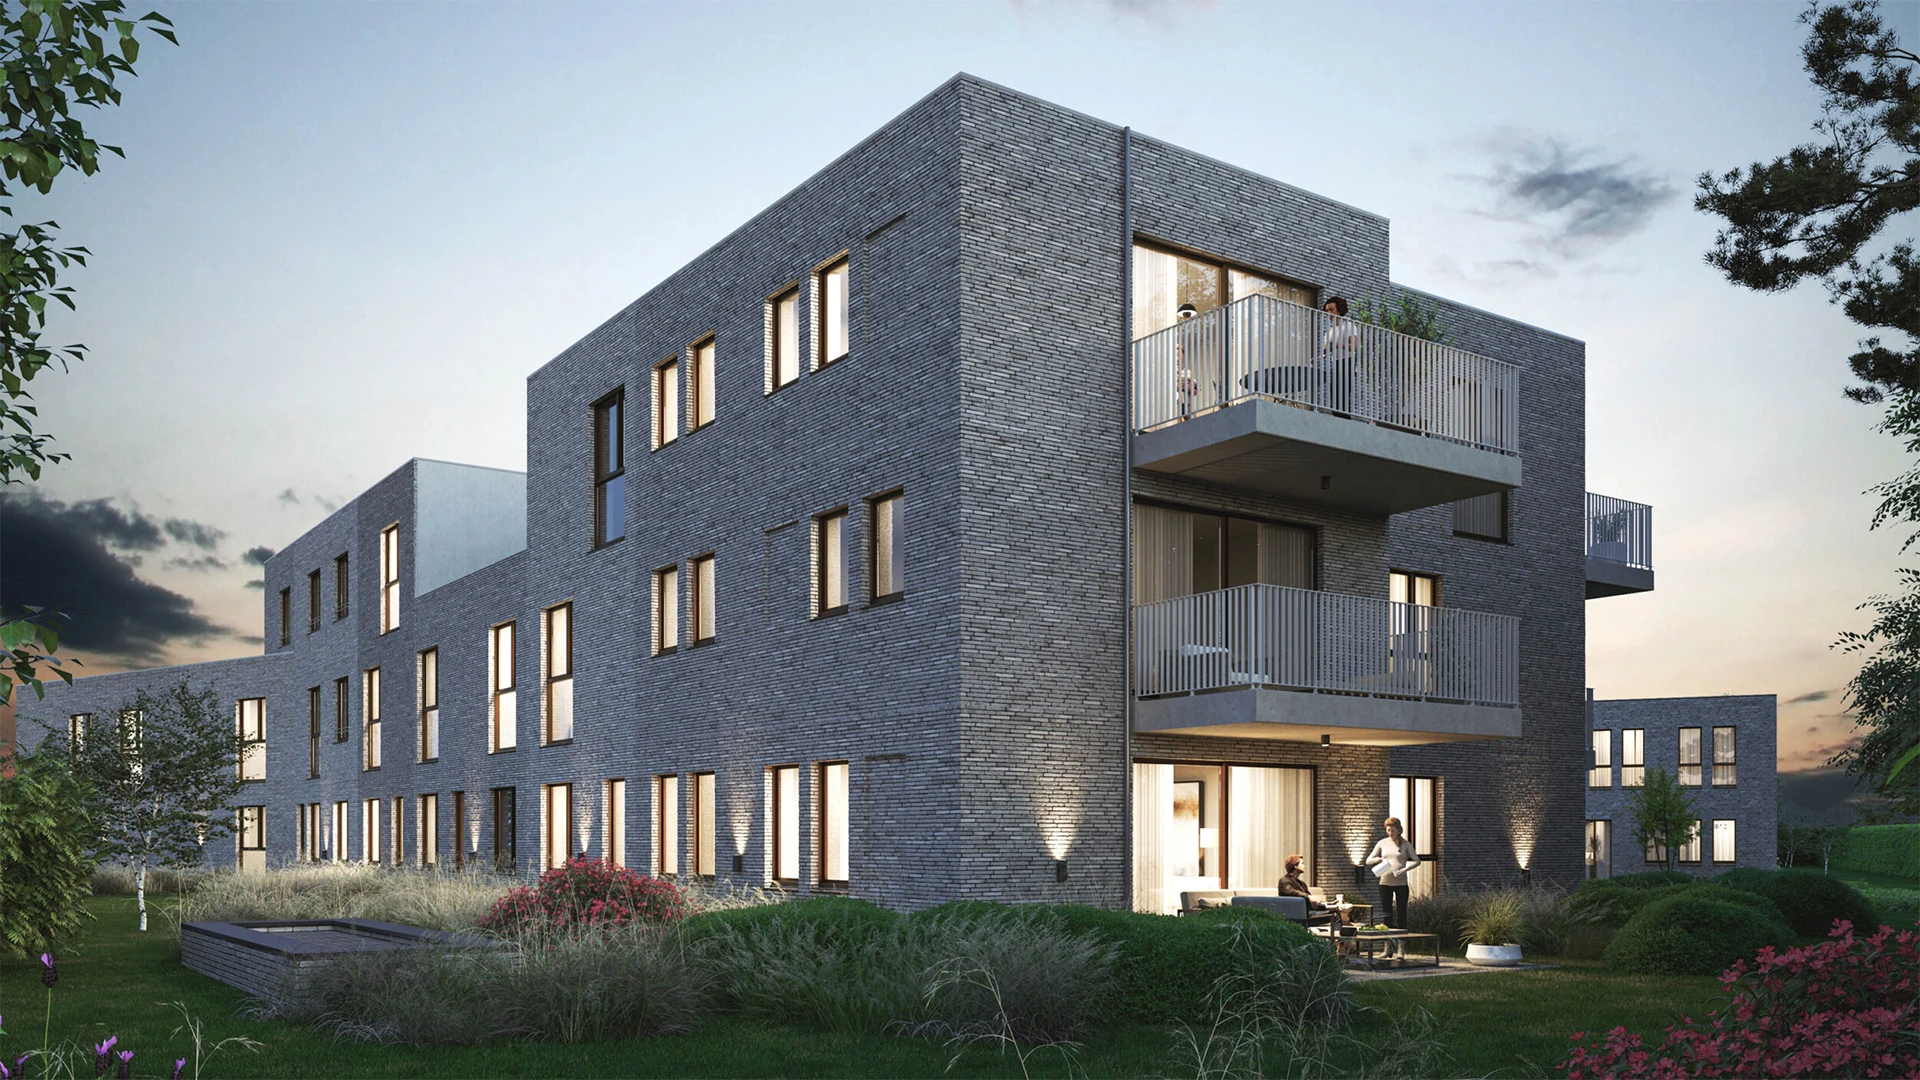 Nieuwbouwproject Monile is gelegen in Haren, vlakbij Brussel.